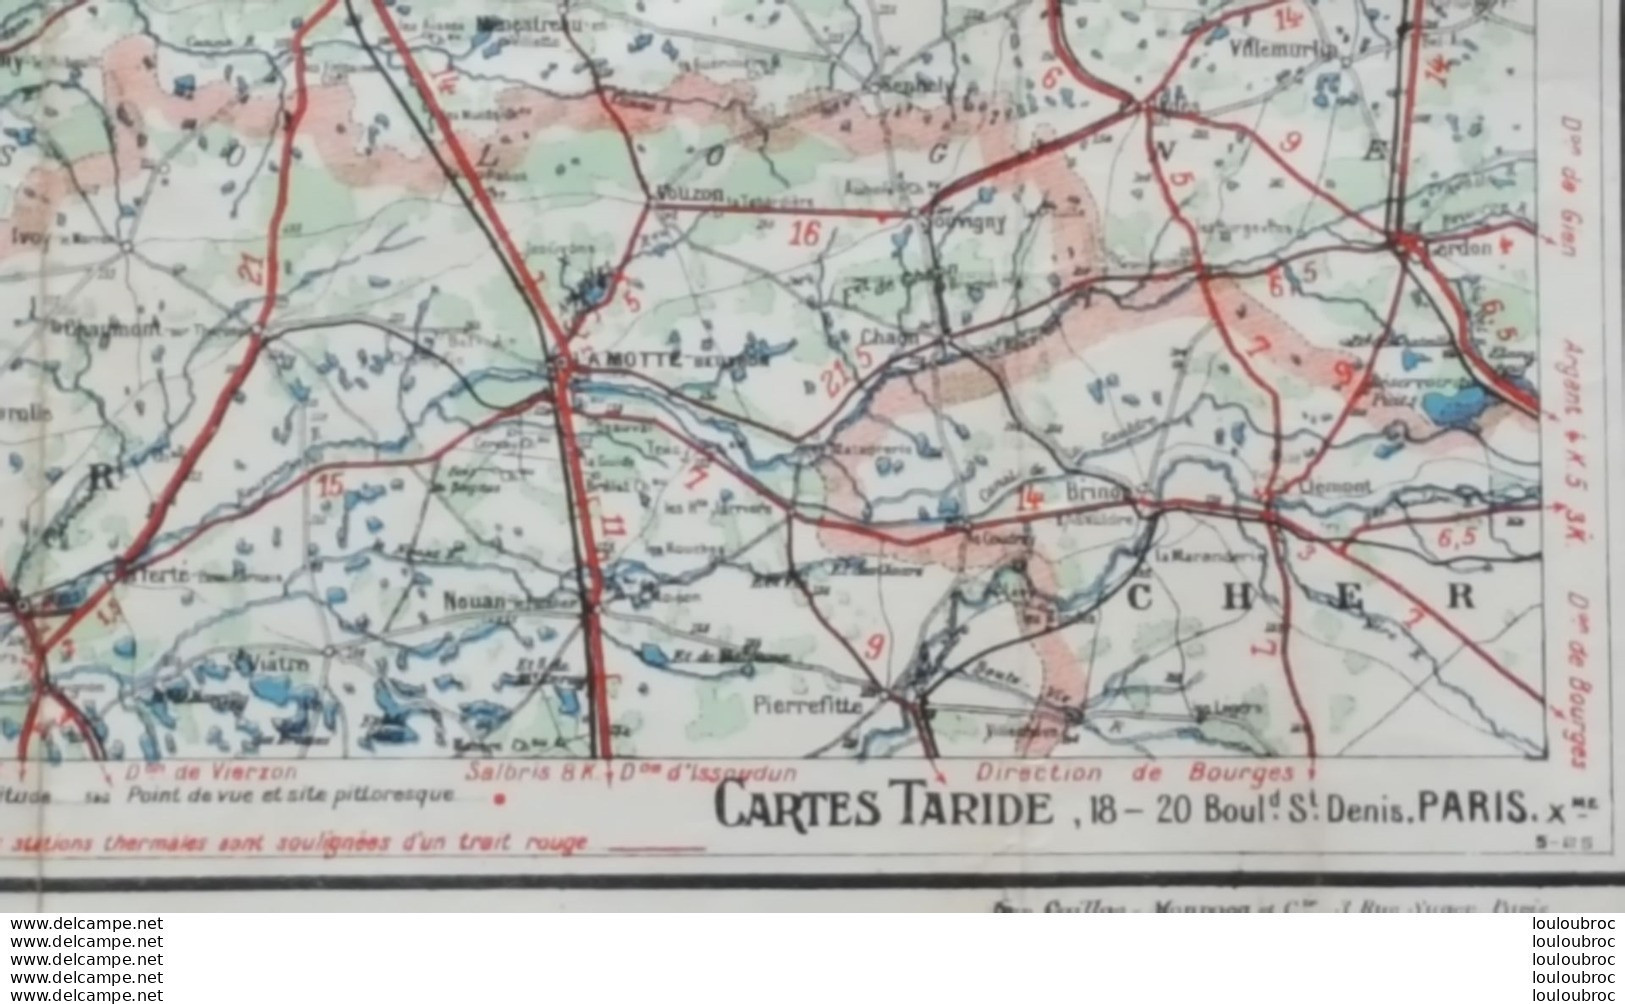 GRANDE CARTE ROUTIERE TARIDE N°8 PARIS ORLEANAIS FORMAT 92 X 74 CM PARFAIT ETAT - Geographical Maps